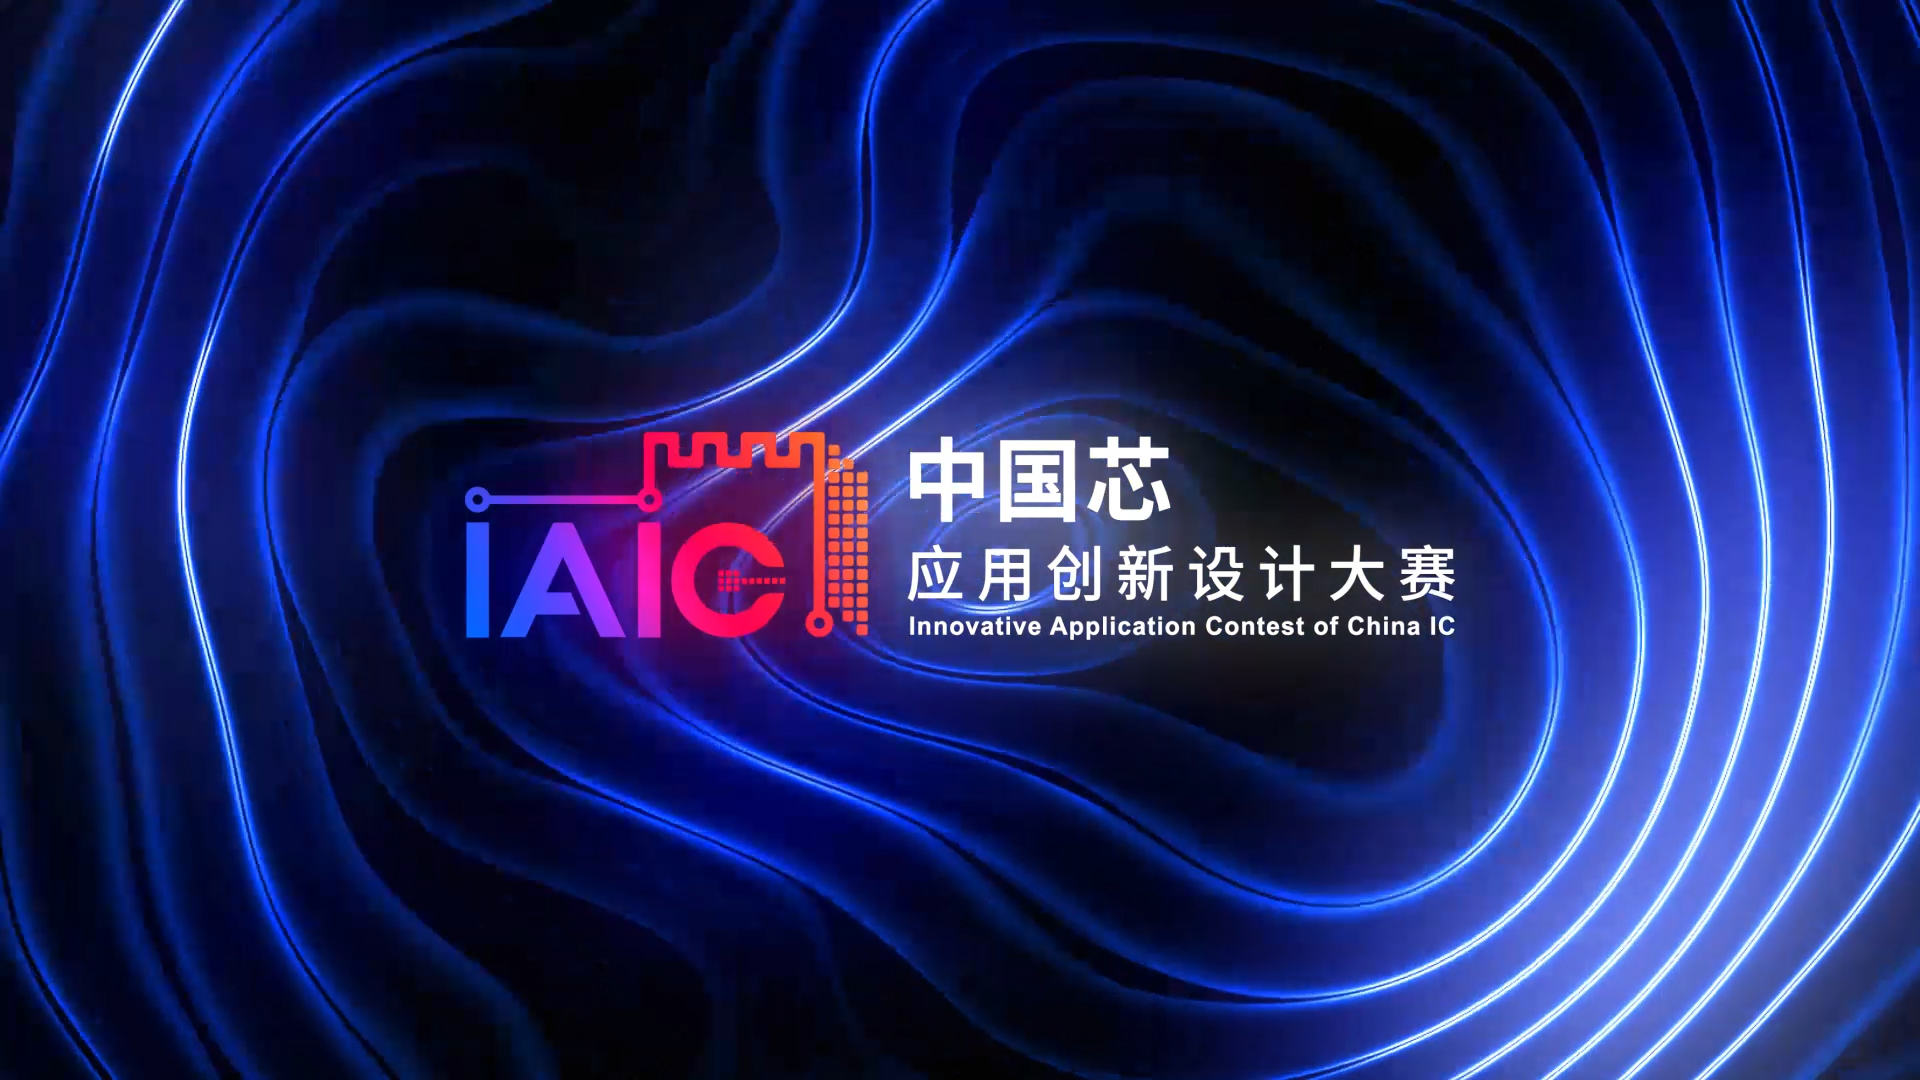 立即报名，让IAIC大赛为您采用中国芯的创新项目赋能！